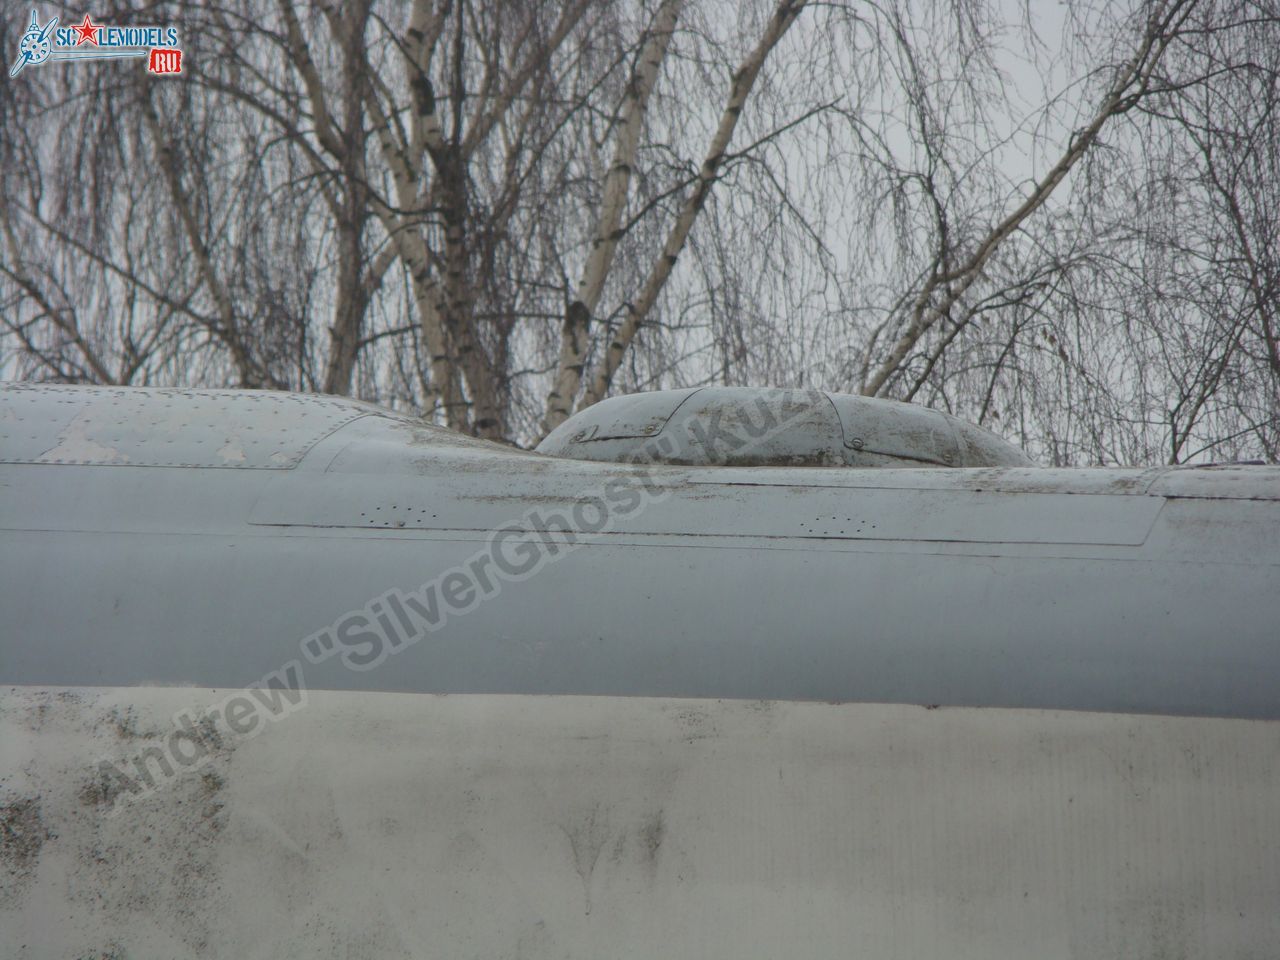 Tu-16_Badger_Smolensk_0038.jpg